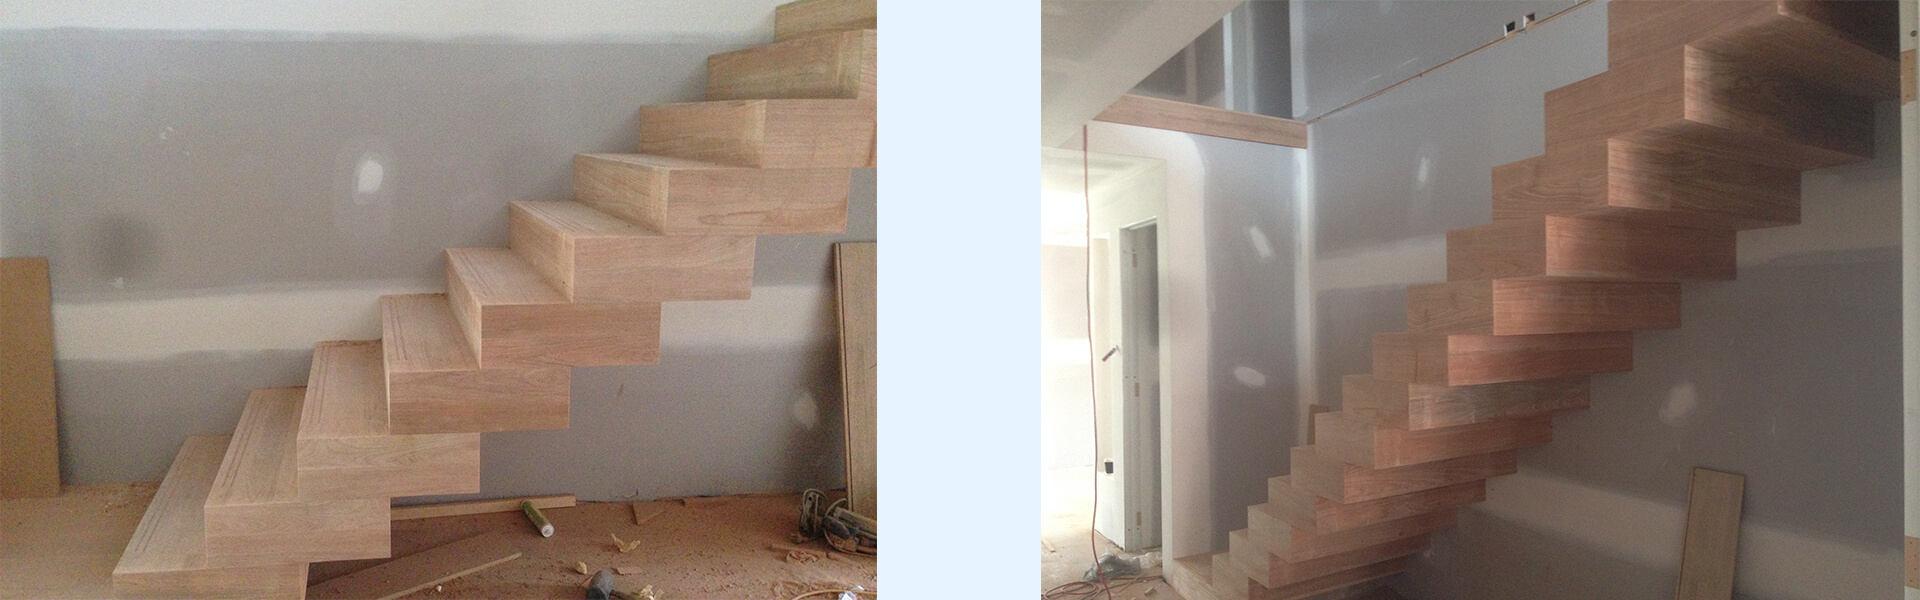 schody drewniane wewnętrzne proste boksowe